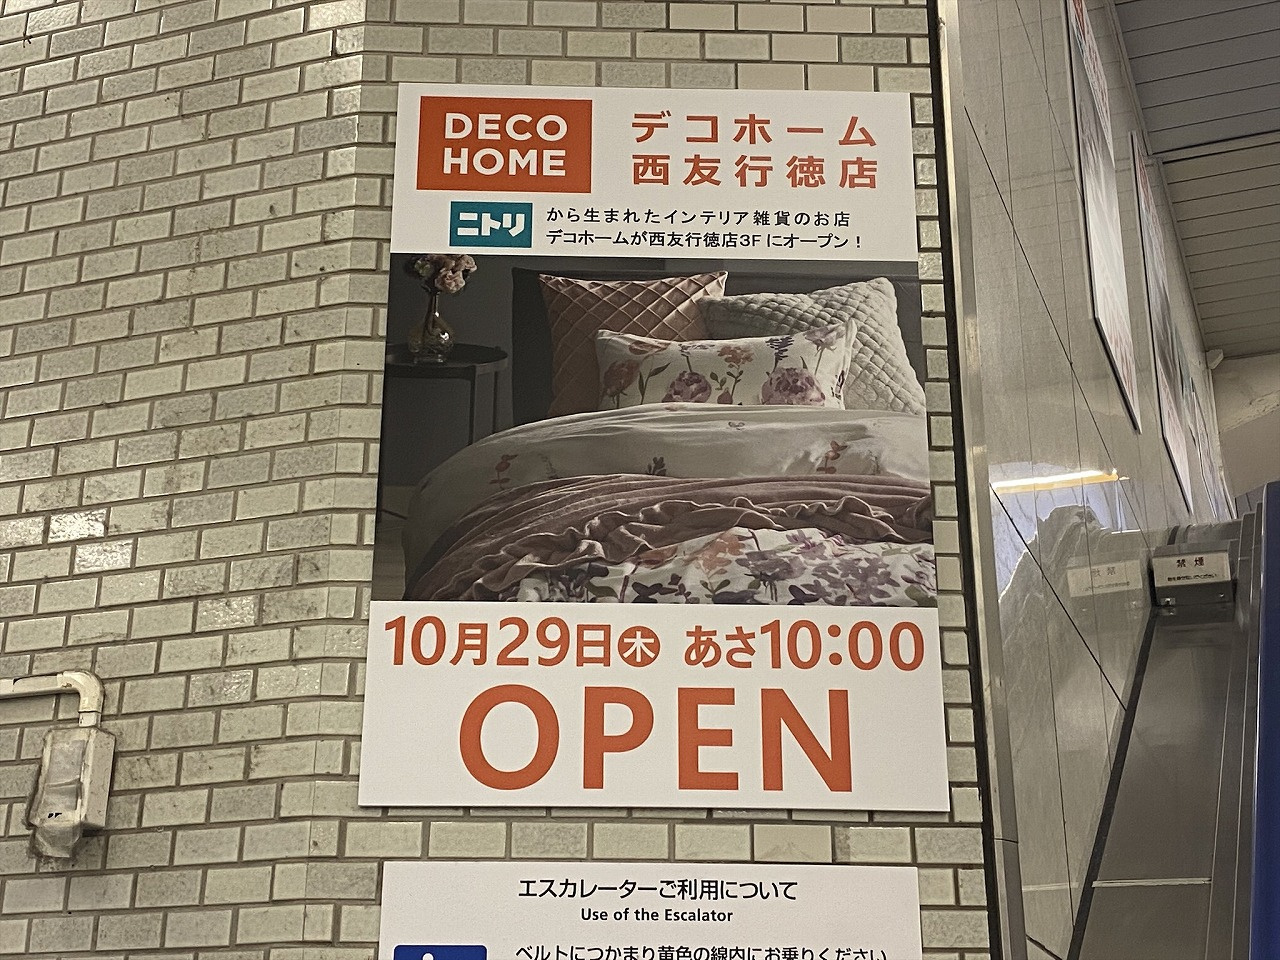 ニトリデコホーム 西友行徳店(6)